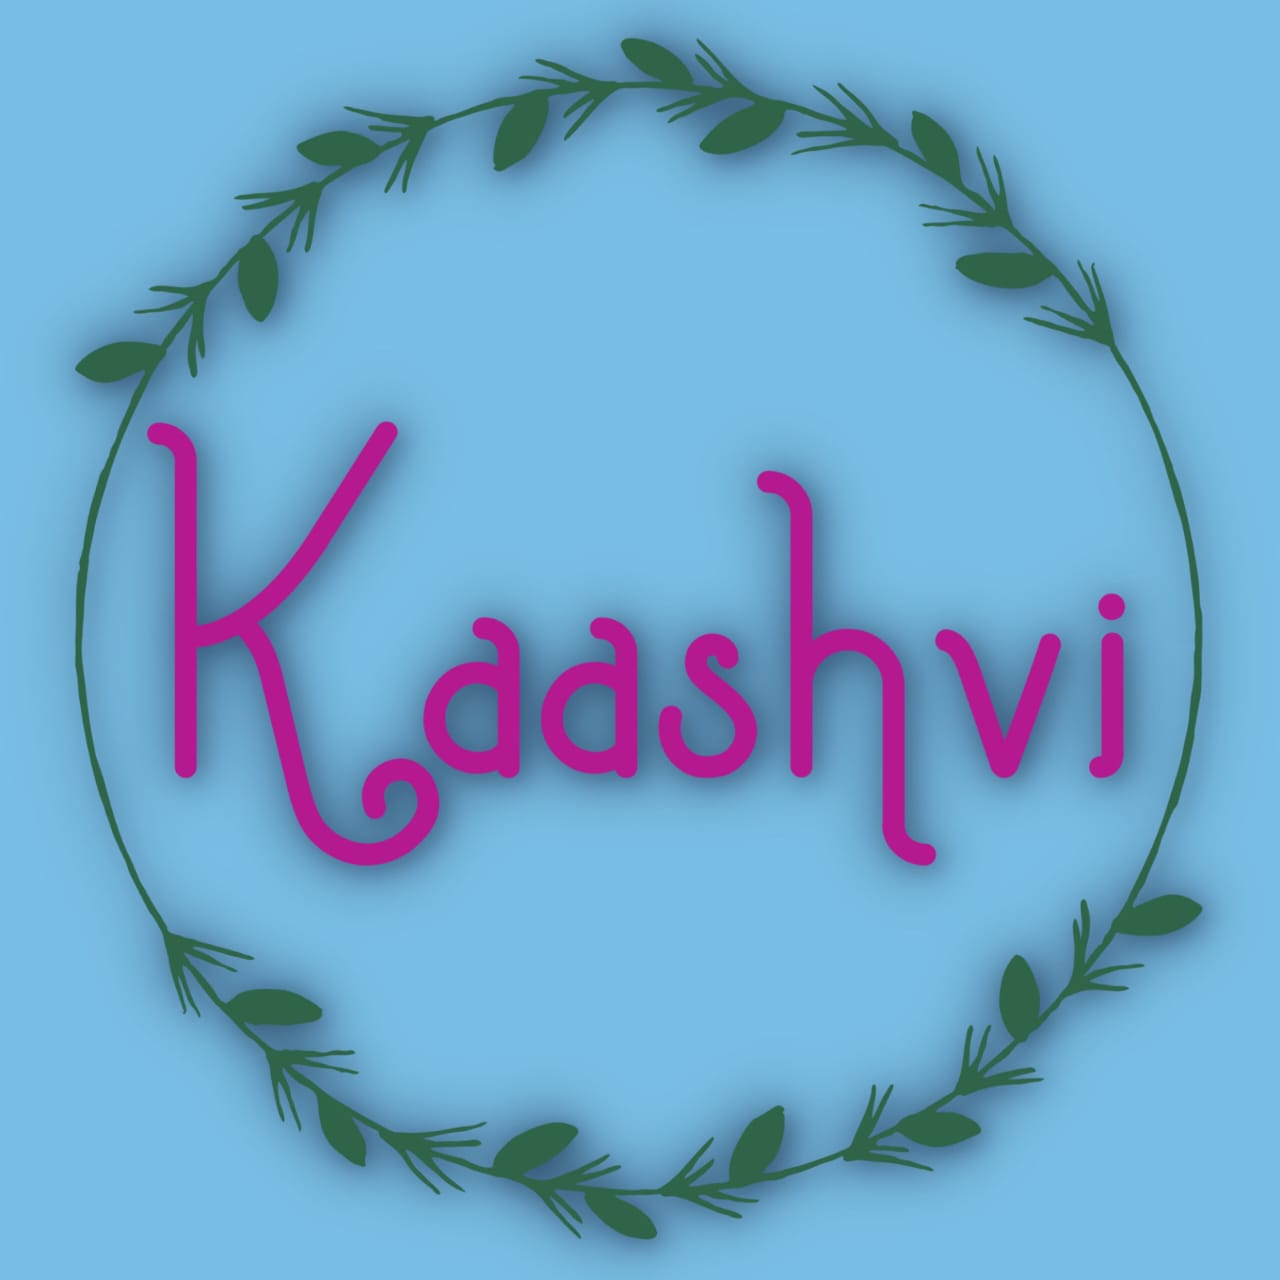 Kaashvi by Pooja Kalra